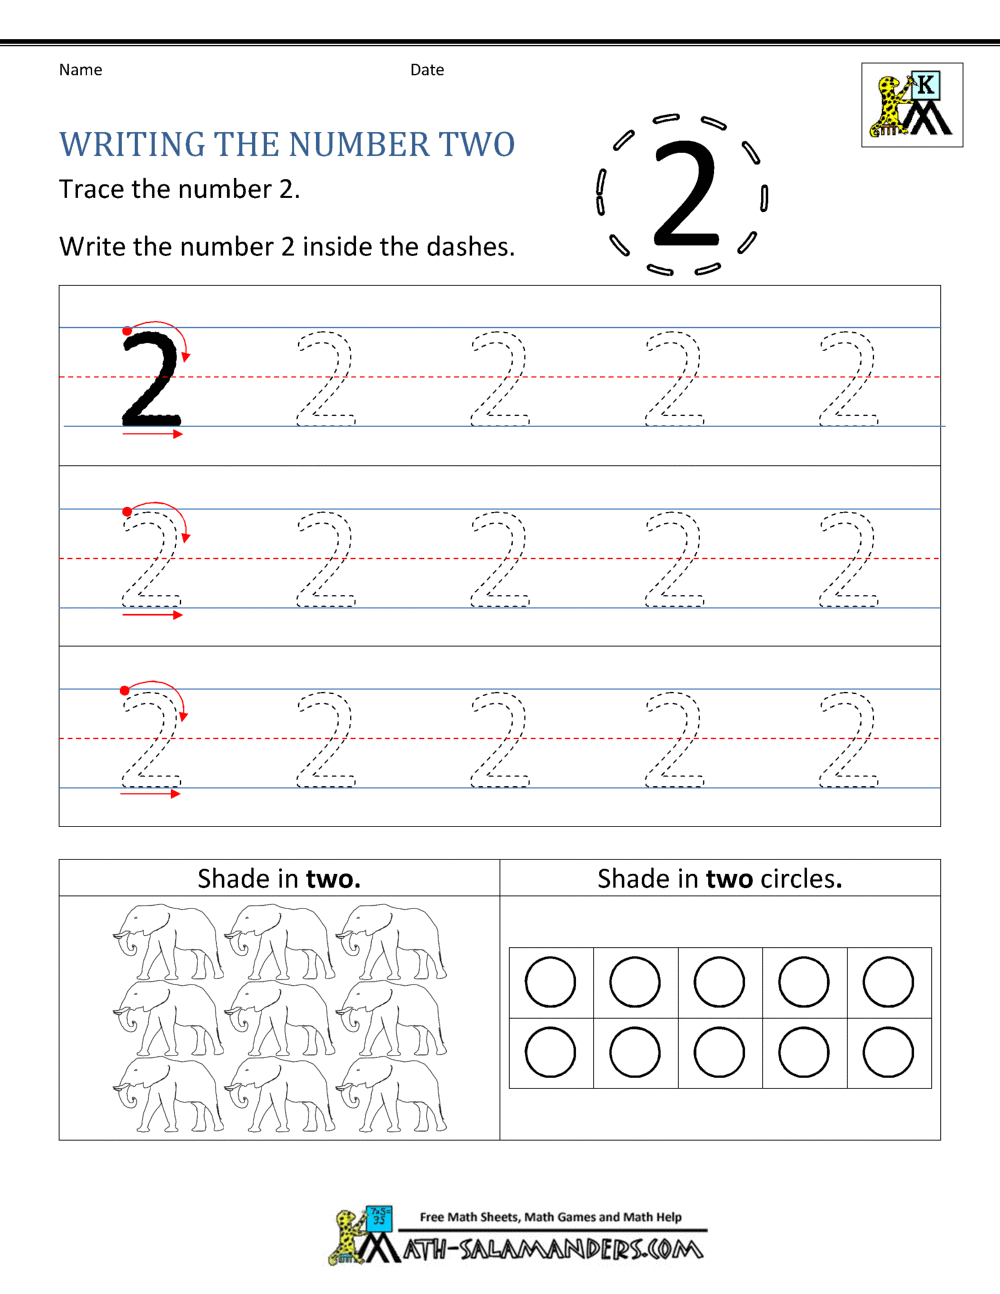 kindergarten-printable-worksheets-writing-numbers-to-10